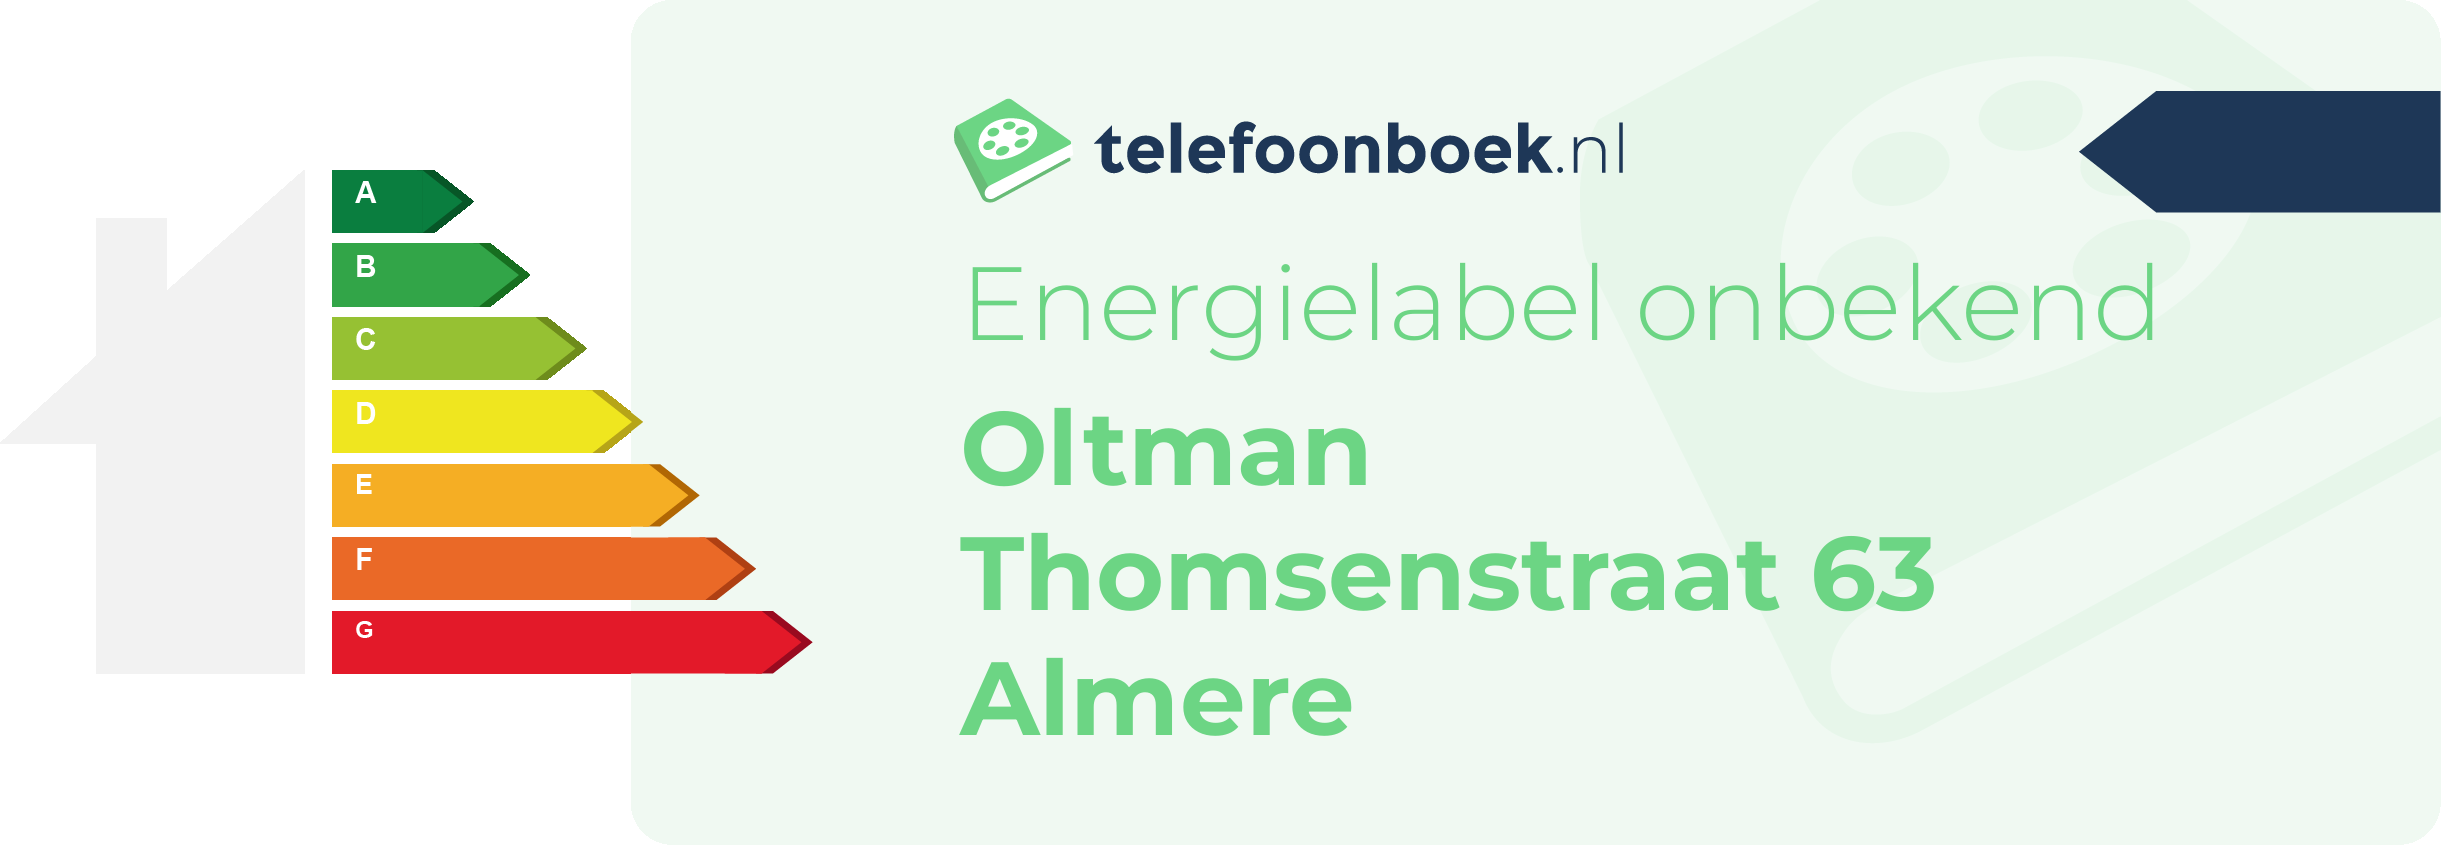 Energielabel Oltman Thomsenstraat 63 Almere